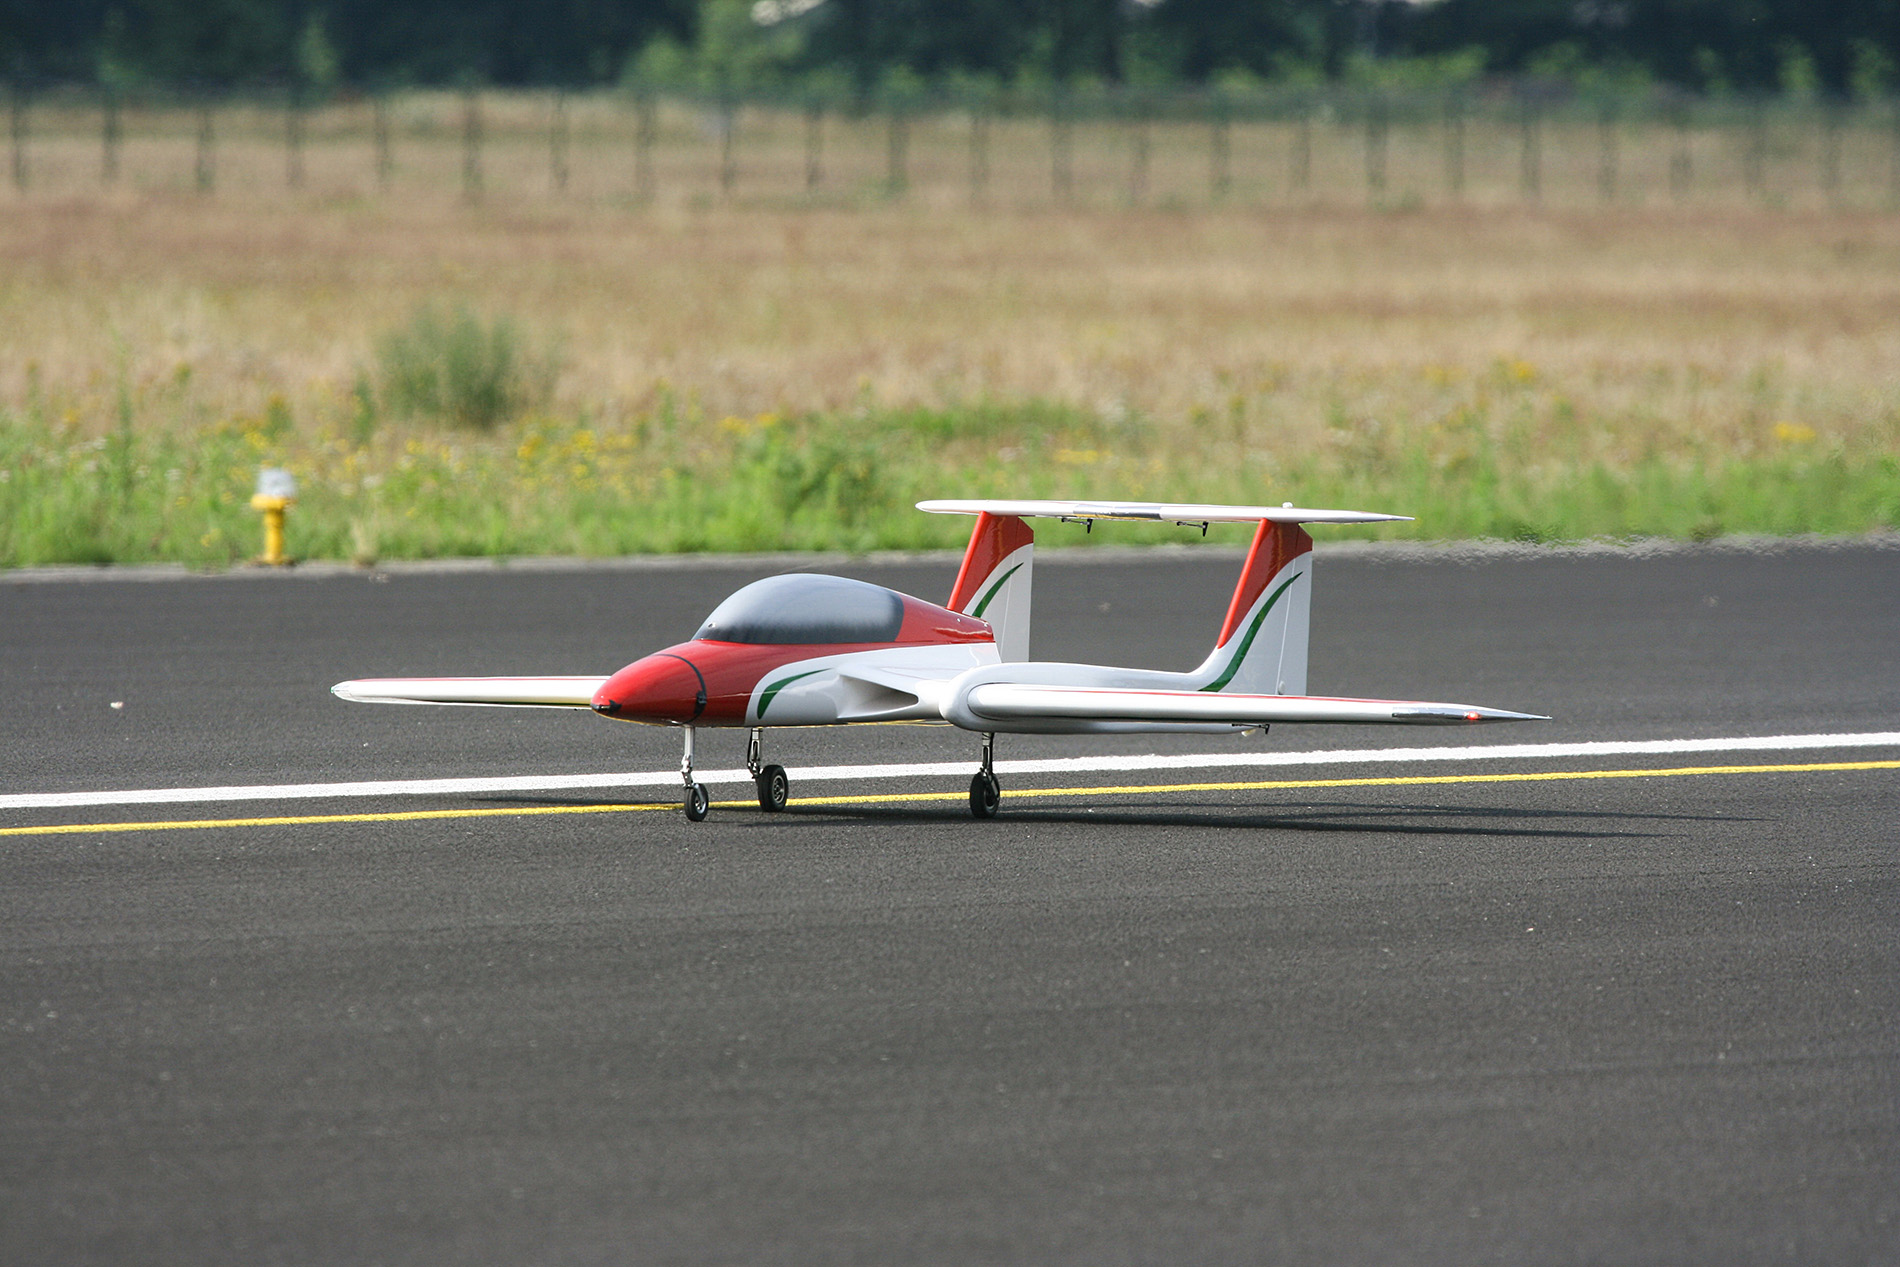 Jasje kleding Betuttelen NLR test met grote drone op Twente Airport